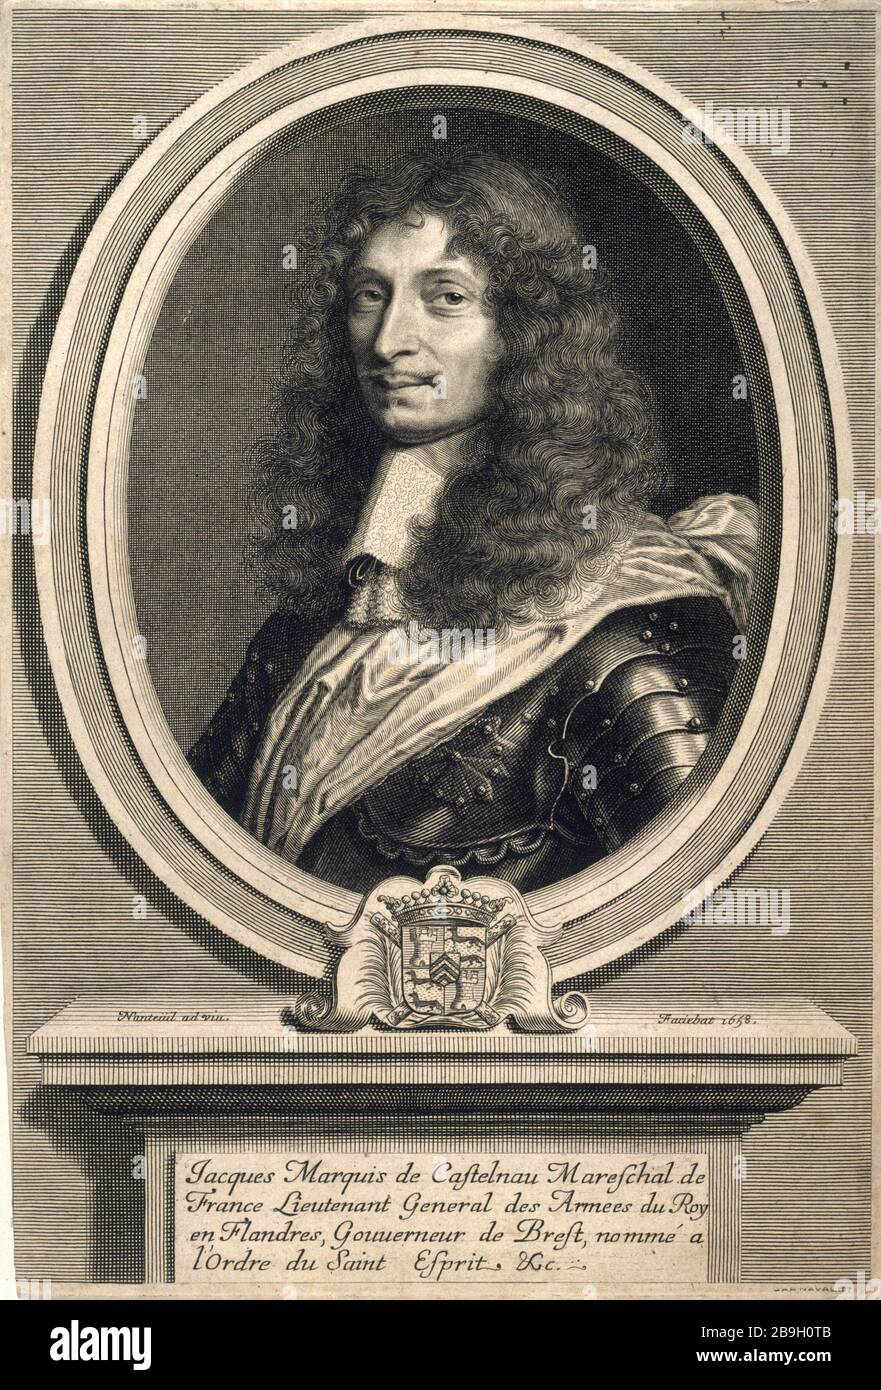 JACQUES MARQUIS DE CASTELNAU-MAUVISSIERE, MARÉCHAL DE FRANCE, LIEUTENANT-GÉNÉRAL DE L'ARMÉE ROI EN FLANDRE ROBERT NANTEUIL (1623-1678). 'Jacques, marquis de Castelnau-Mauvissière, Maréchal de France, Lieutenant général des armées du roi en Flandres'. Gravure, 1658. Paris, musée Carnavalet. Banque D'Images